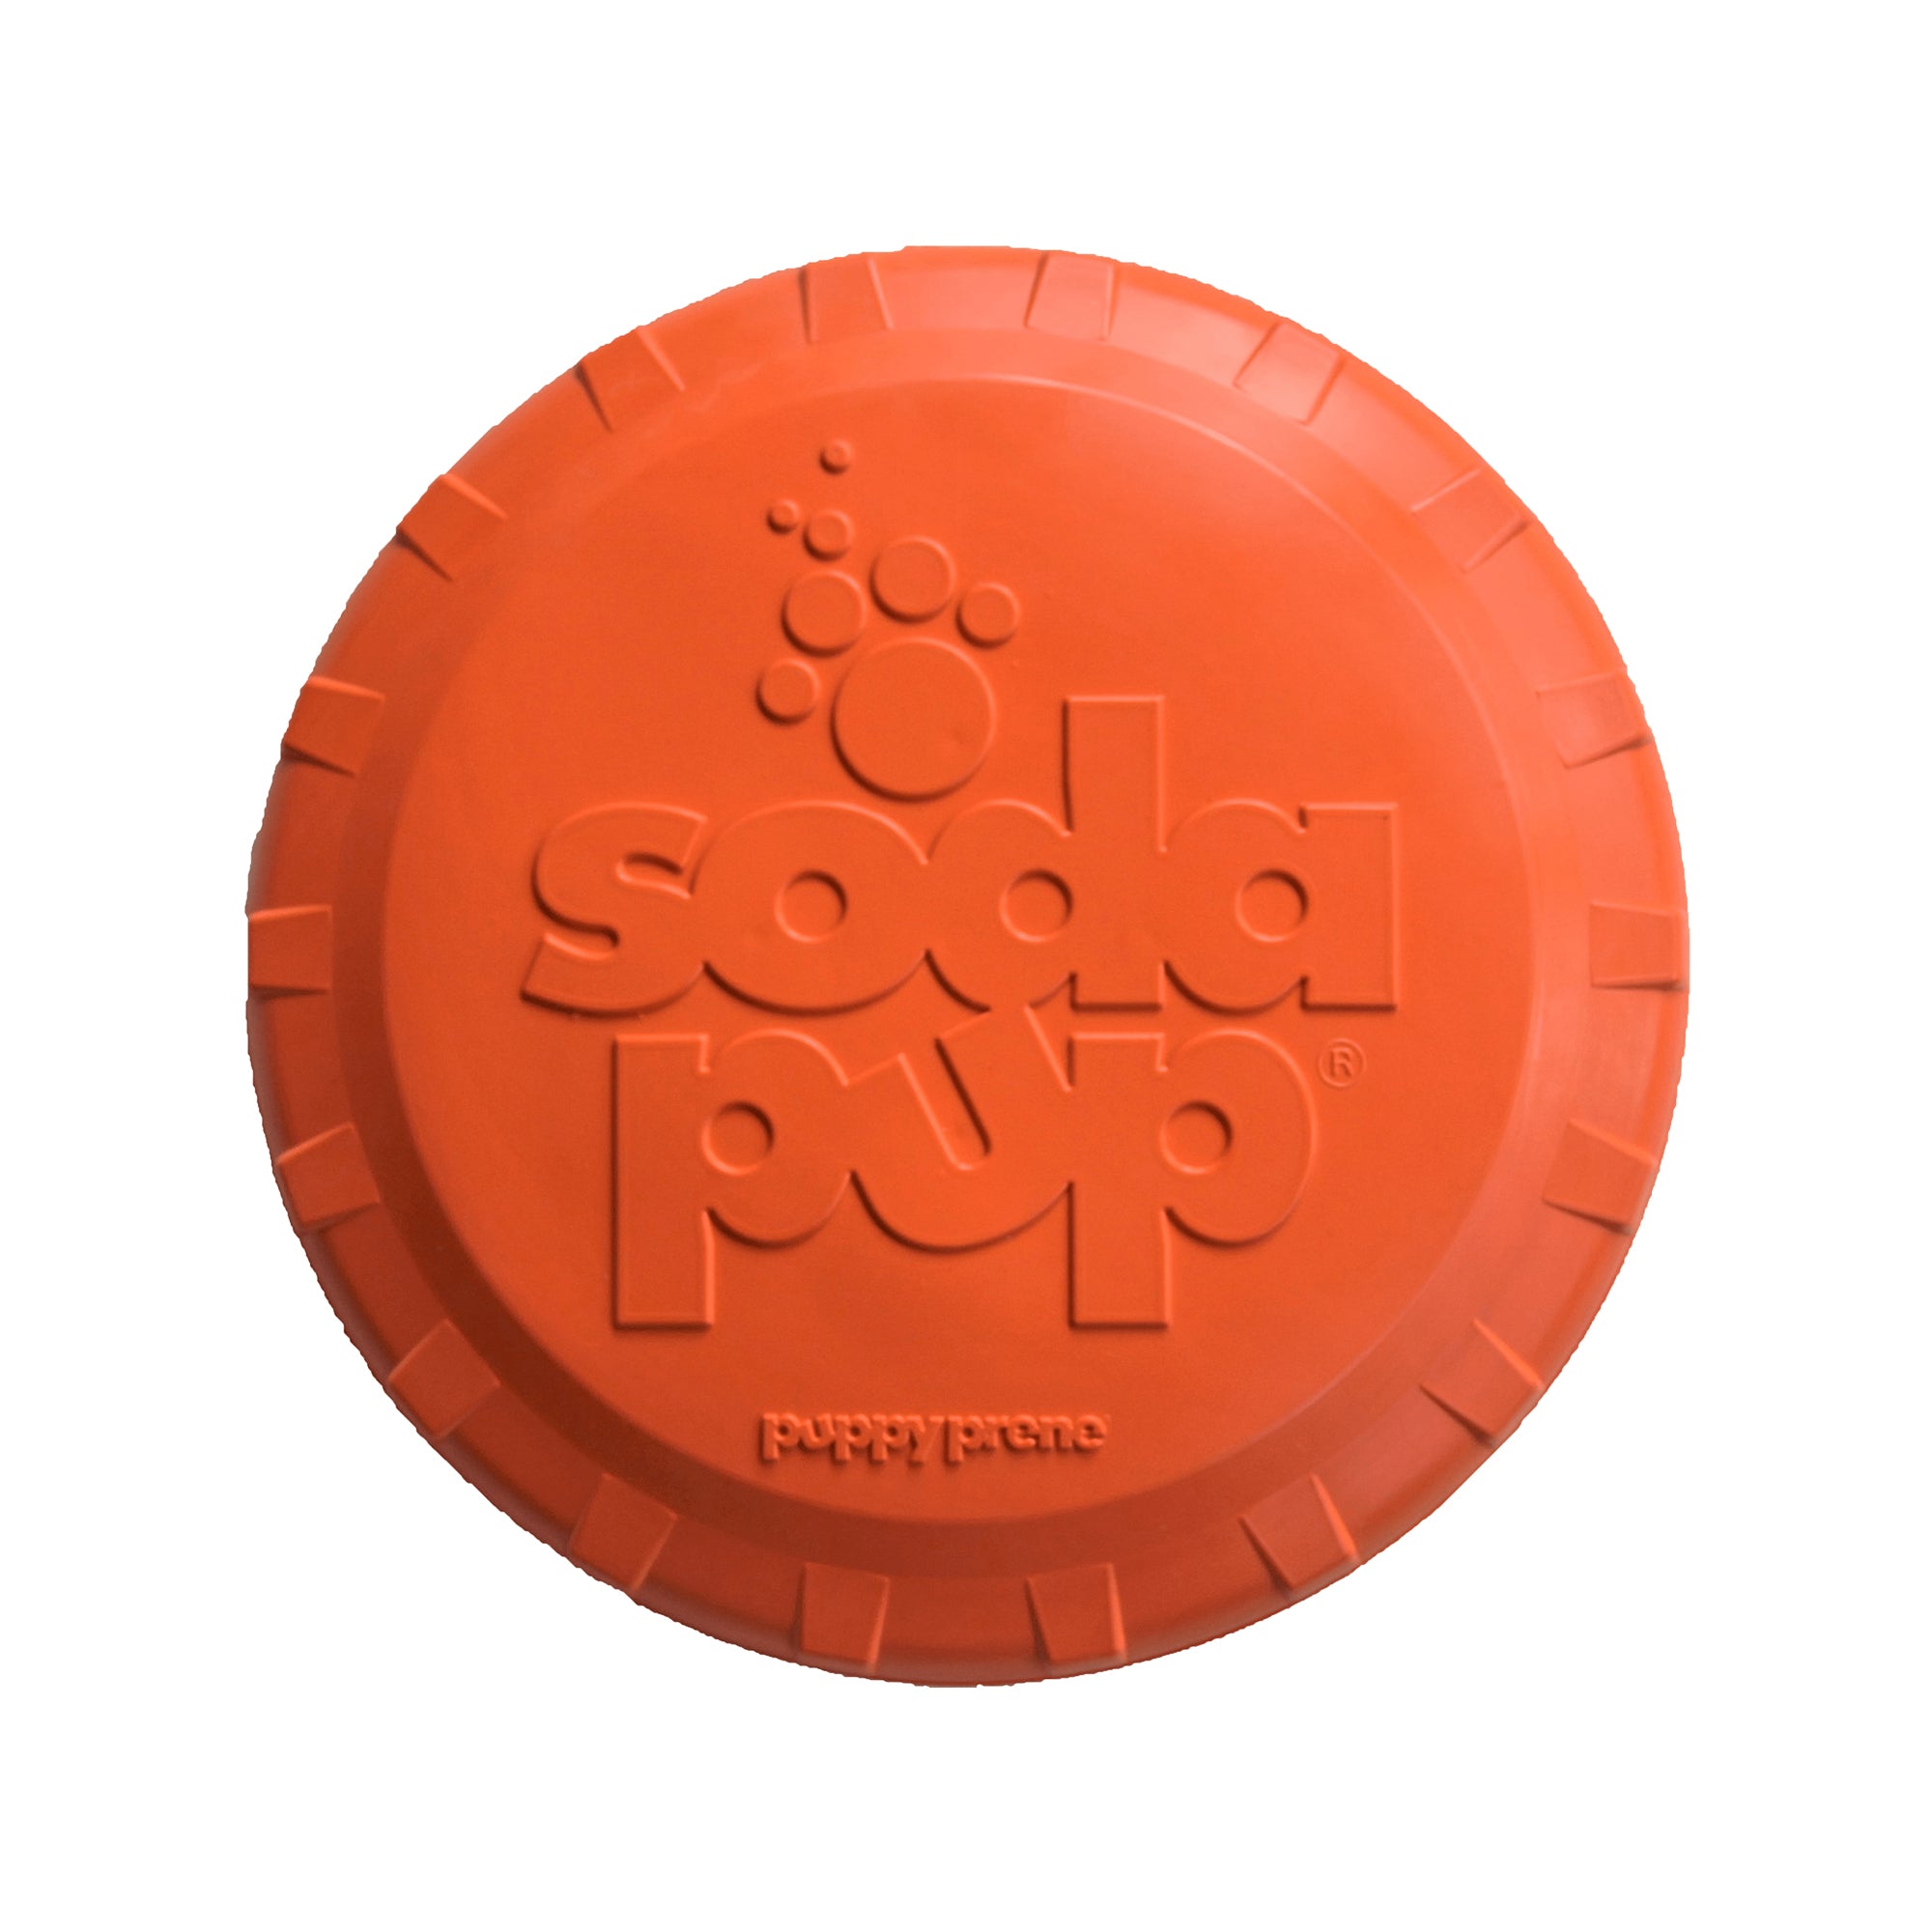 SP Flaschenaufsatz-Flyer Strapazierfähiger Gummi-Apportierfrisbee – Orange Squeeze